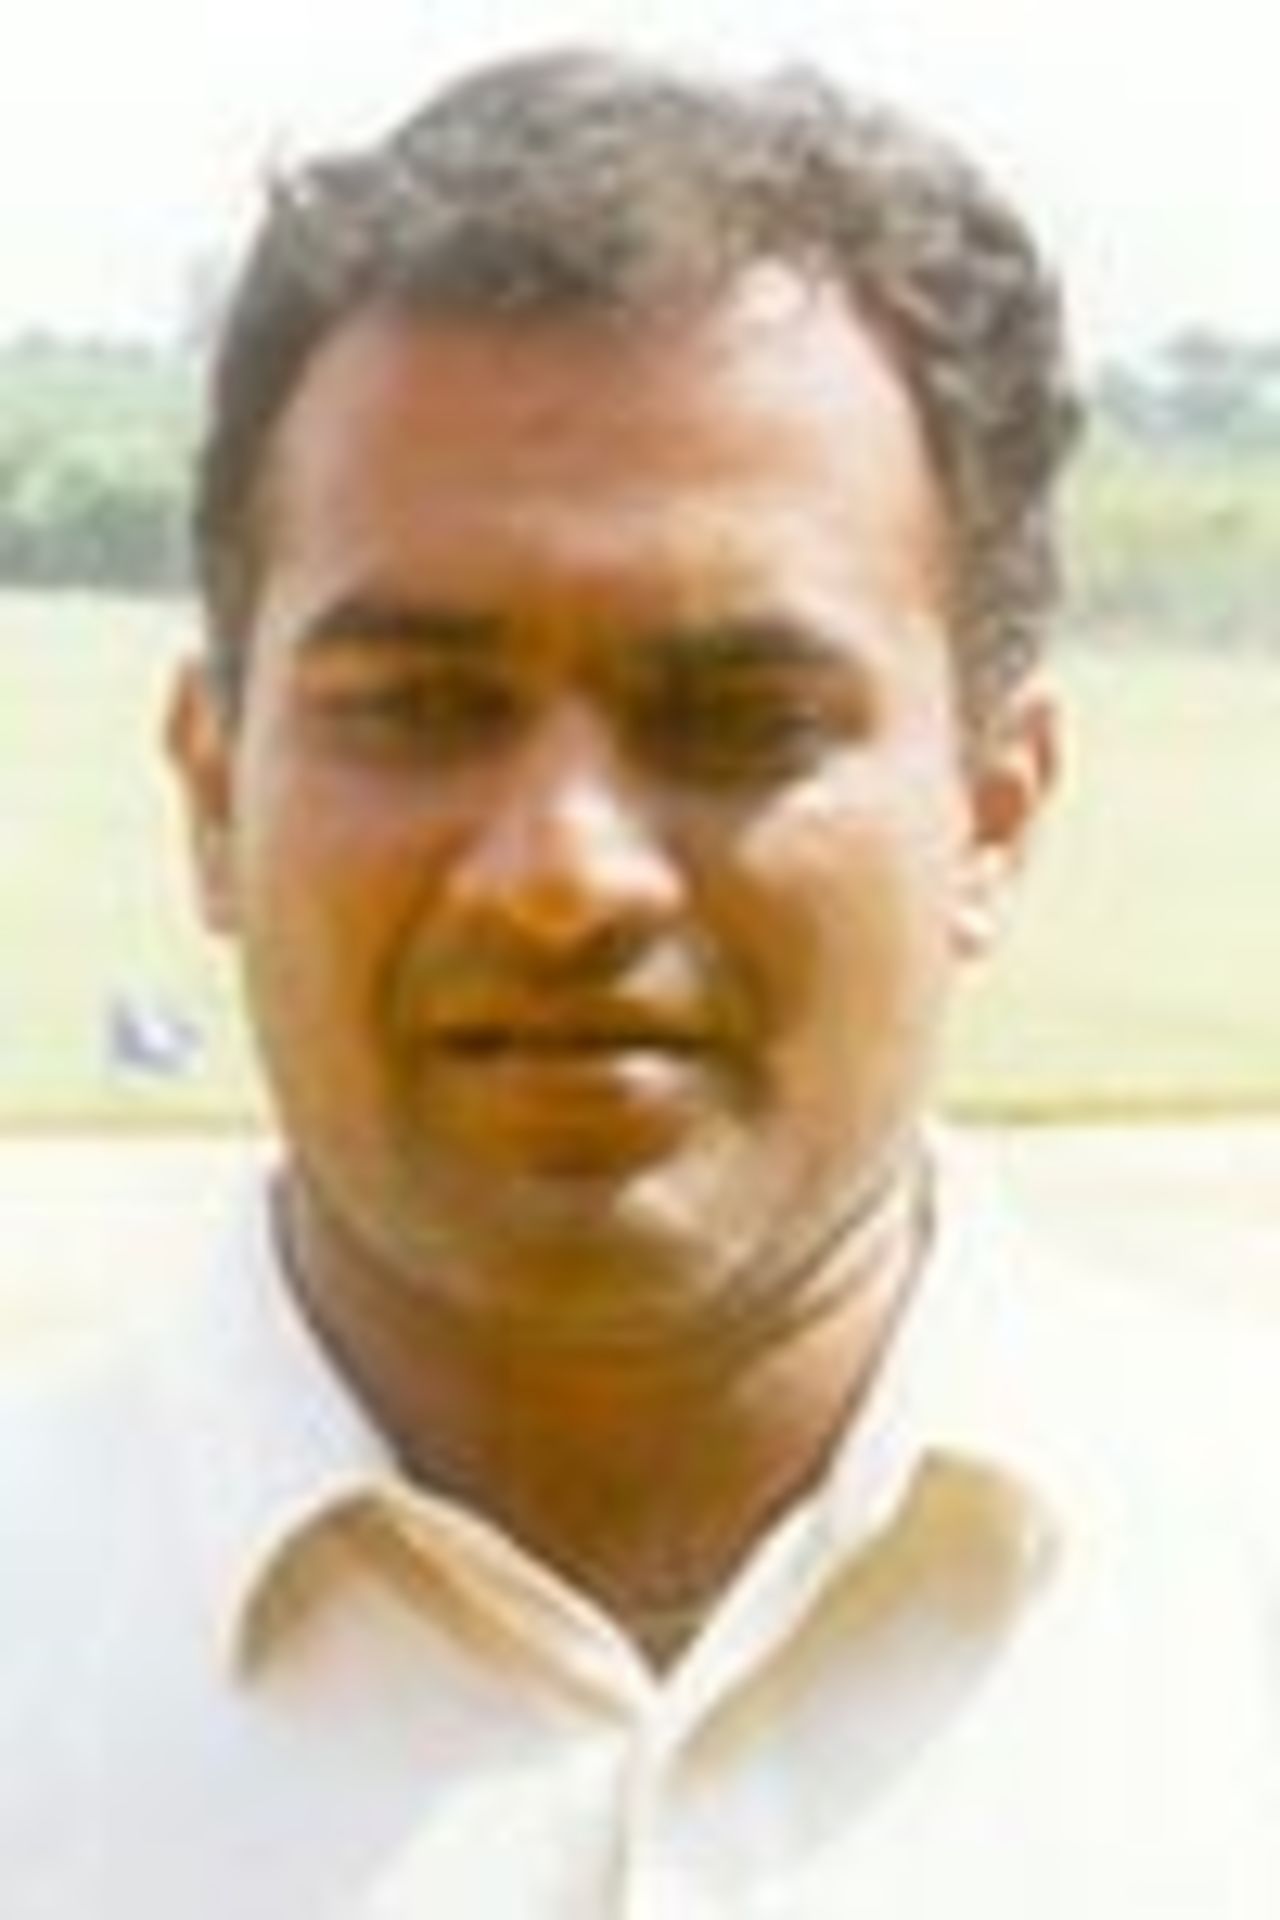 RG Shyaam Sundaar, Indian Bank Sports Recreation Club, Portrait